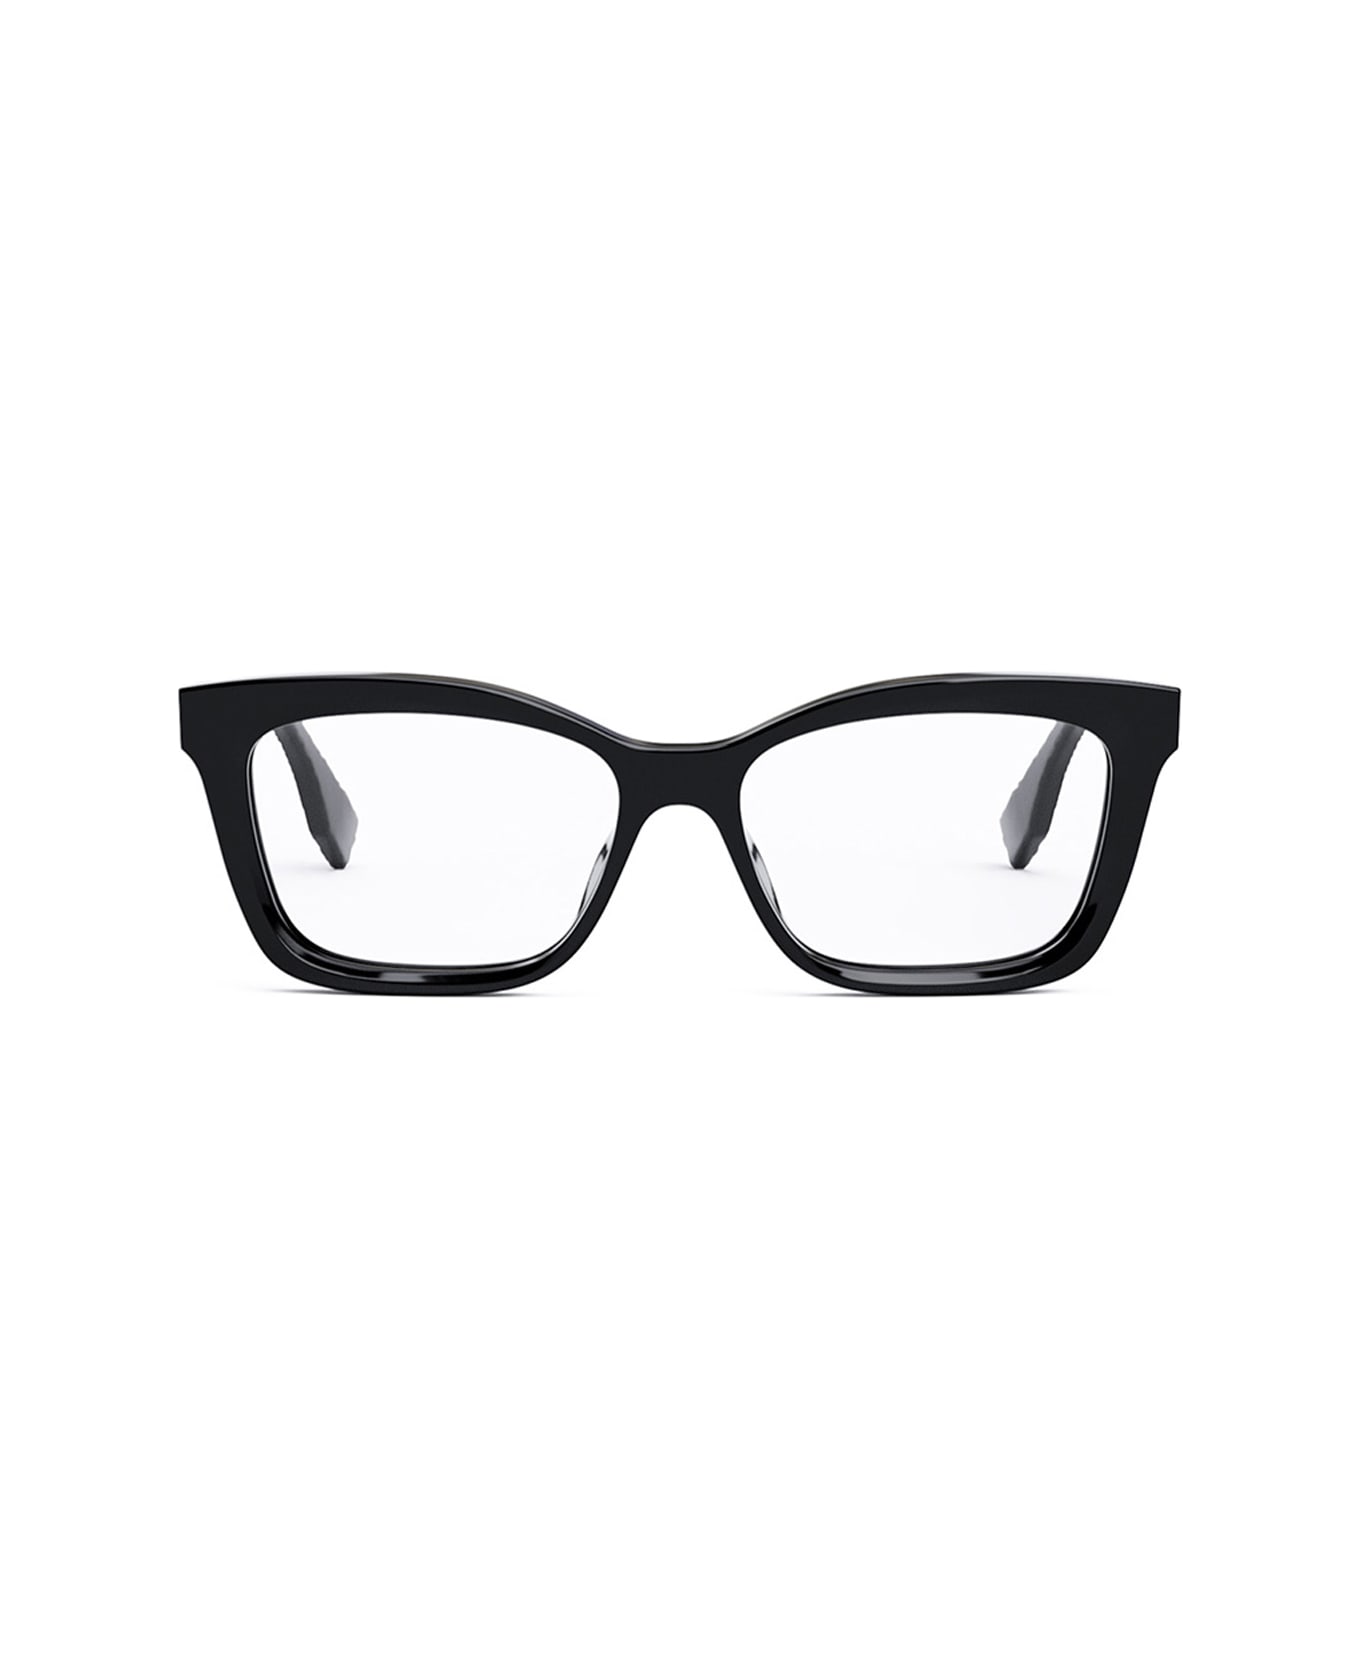 Fendi Eyewear Fe50057i 001 Glasses - Nero アイウェア